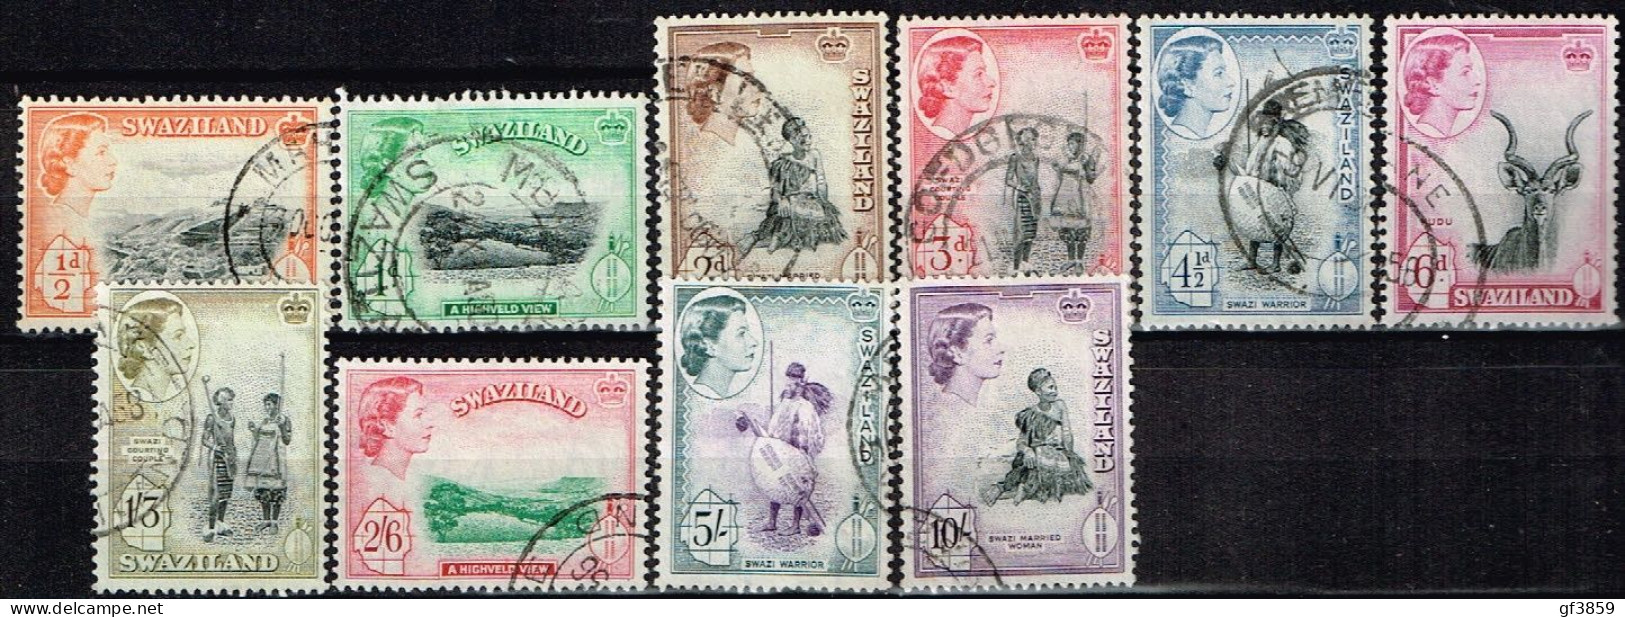 SWAZILAND / Oblitérés / Used / 1956 - Série Courante / Elizabeth II Et Sujet Divers - Swasiland (...-1967)